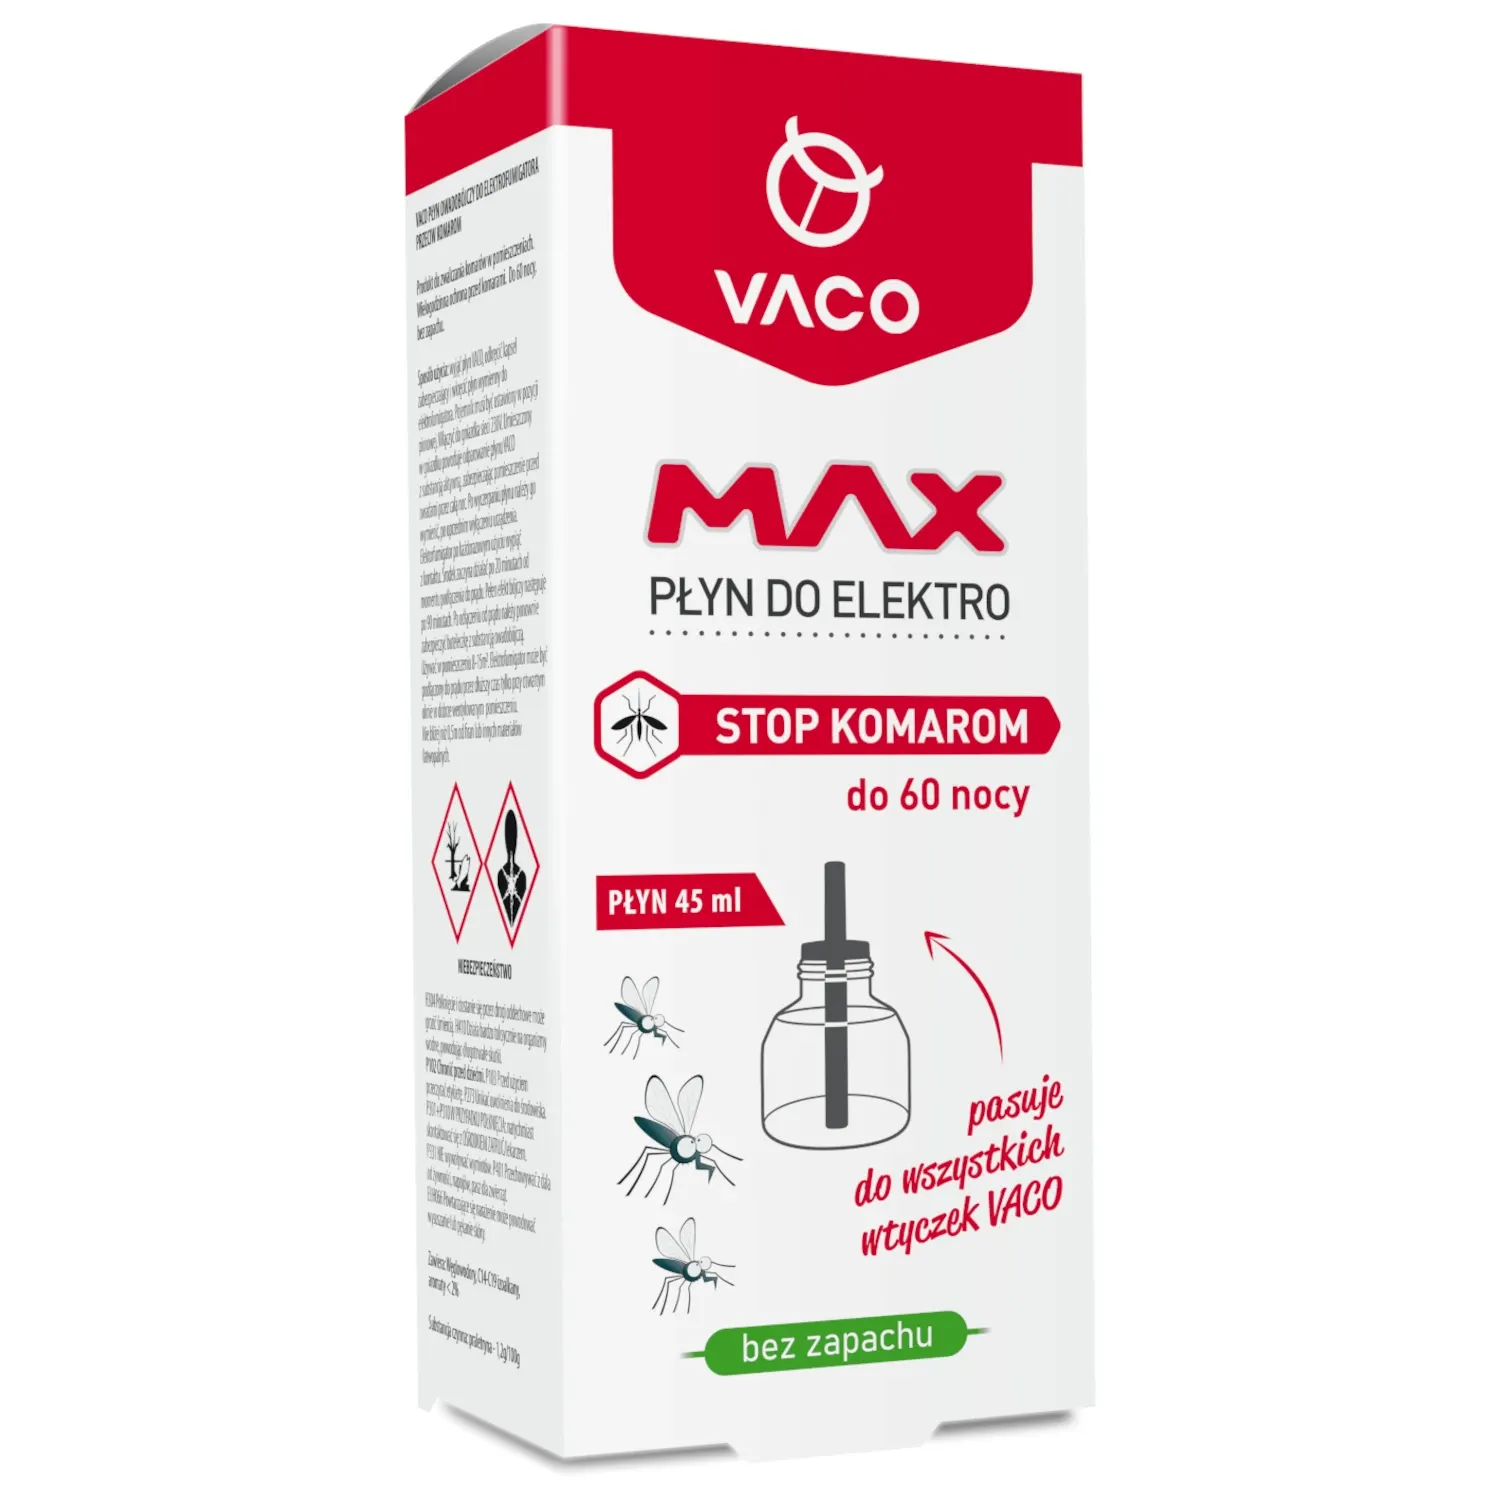 Wkład do elektro MAX na komary do kontaktu VACO